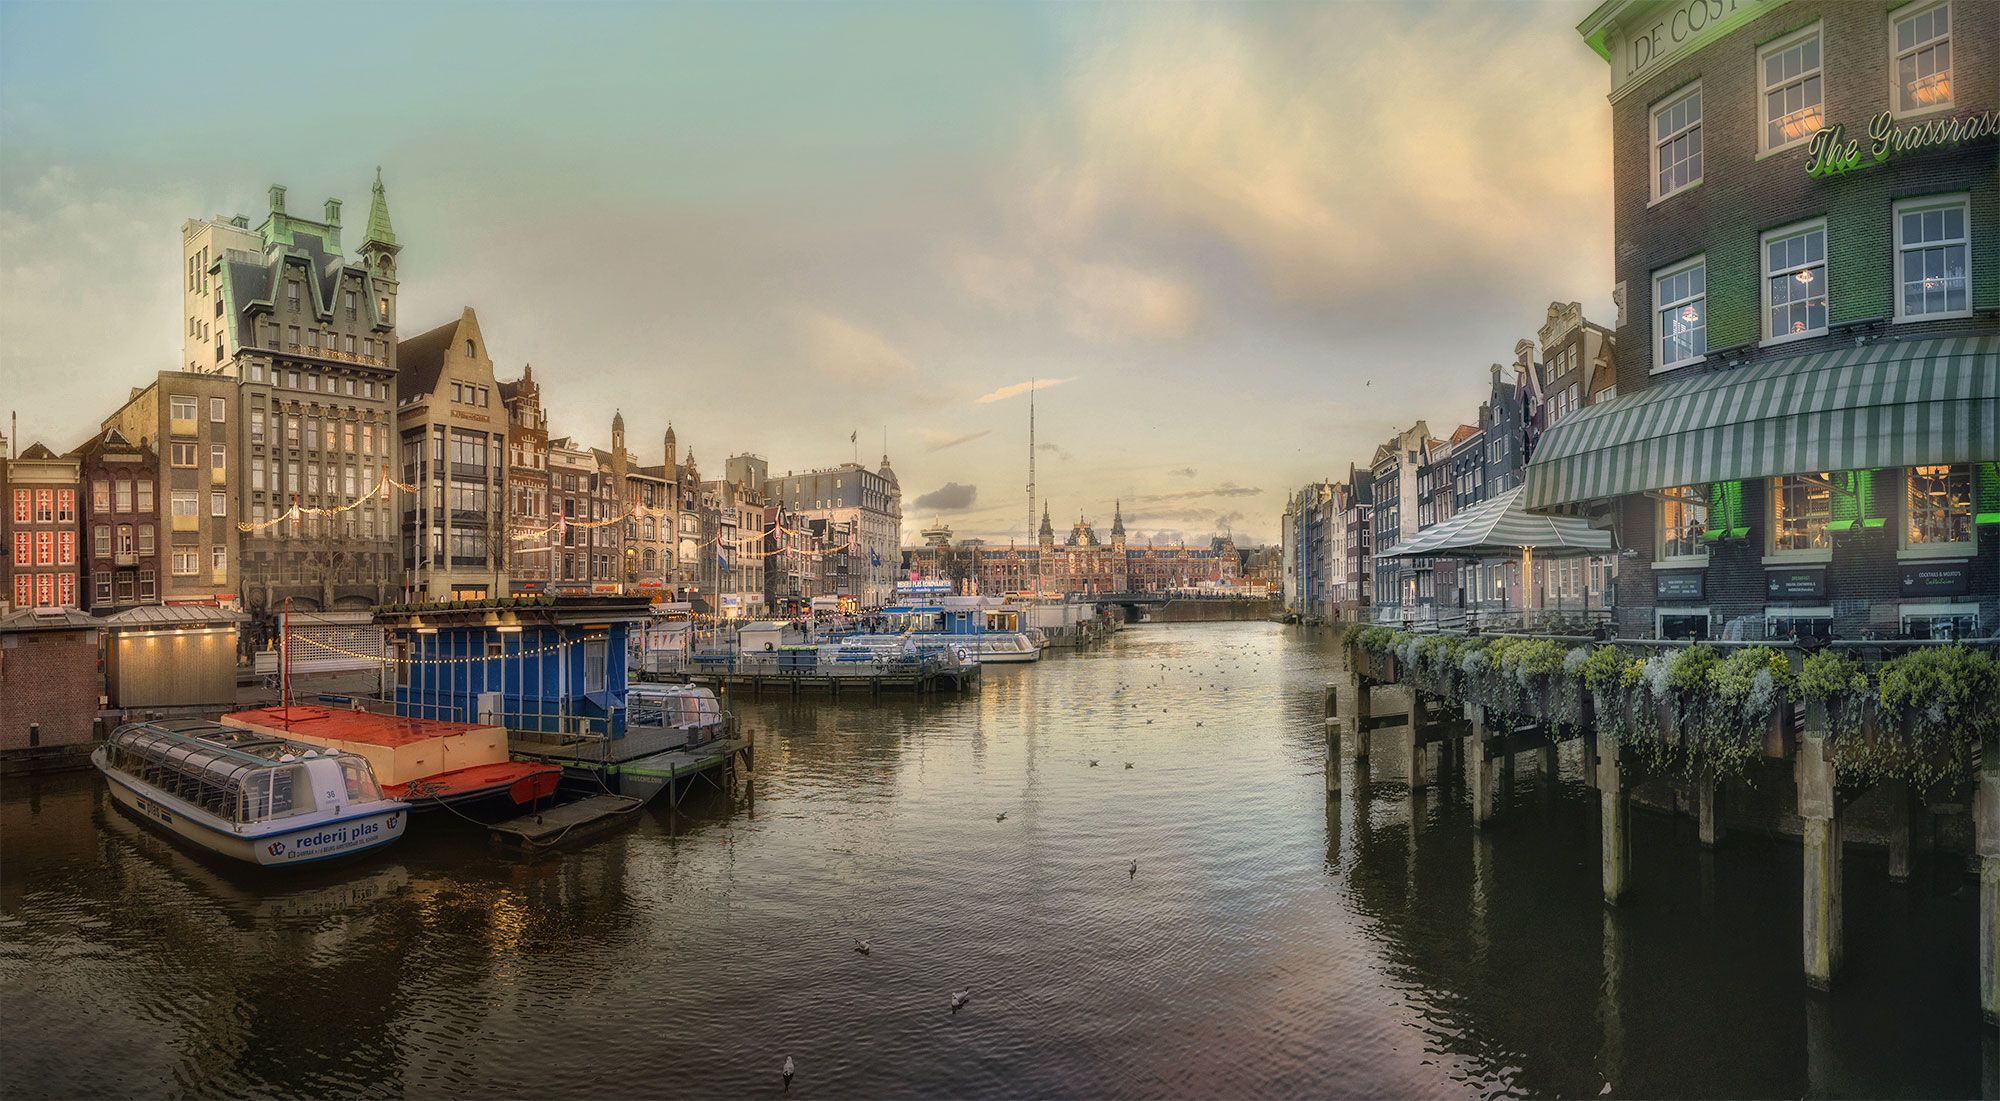 городской пейзаж,каналы,canals,evening,architecture,северная венеция,loves_netherlands,amsterdam,canalhouses,netherlands,нидерланды,голландия , вечерний город, GaL-Lina